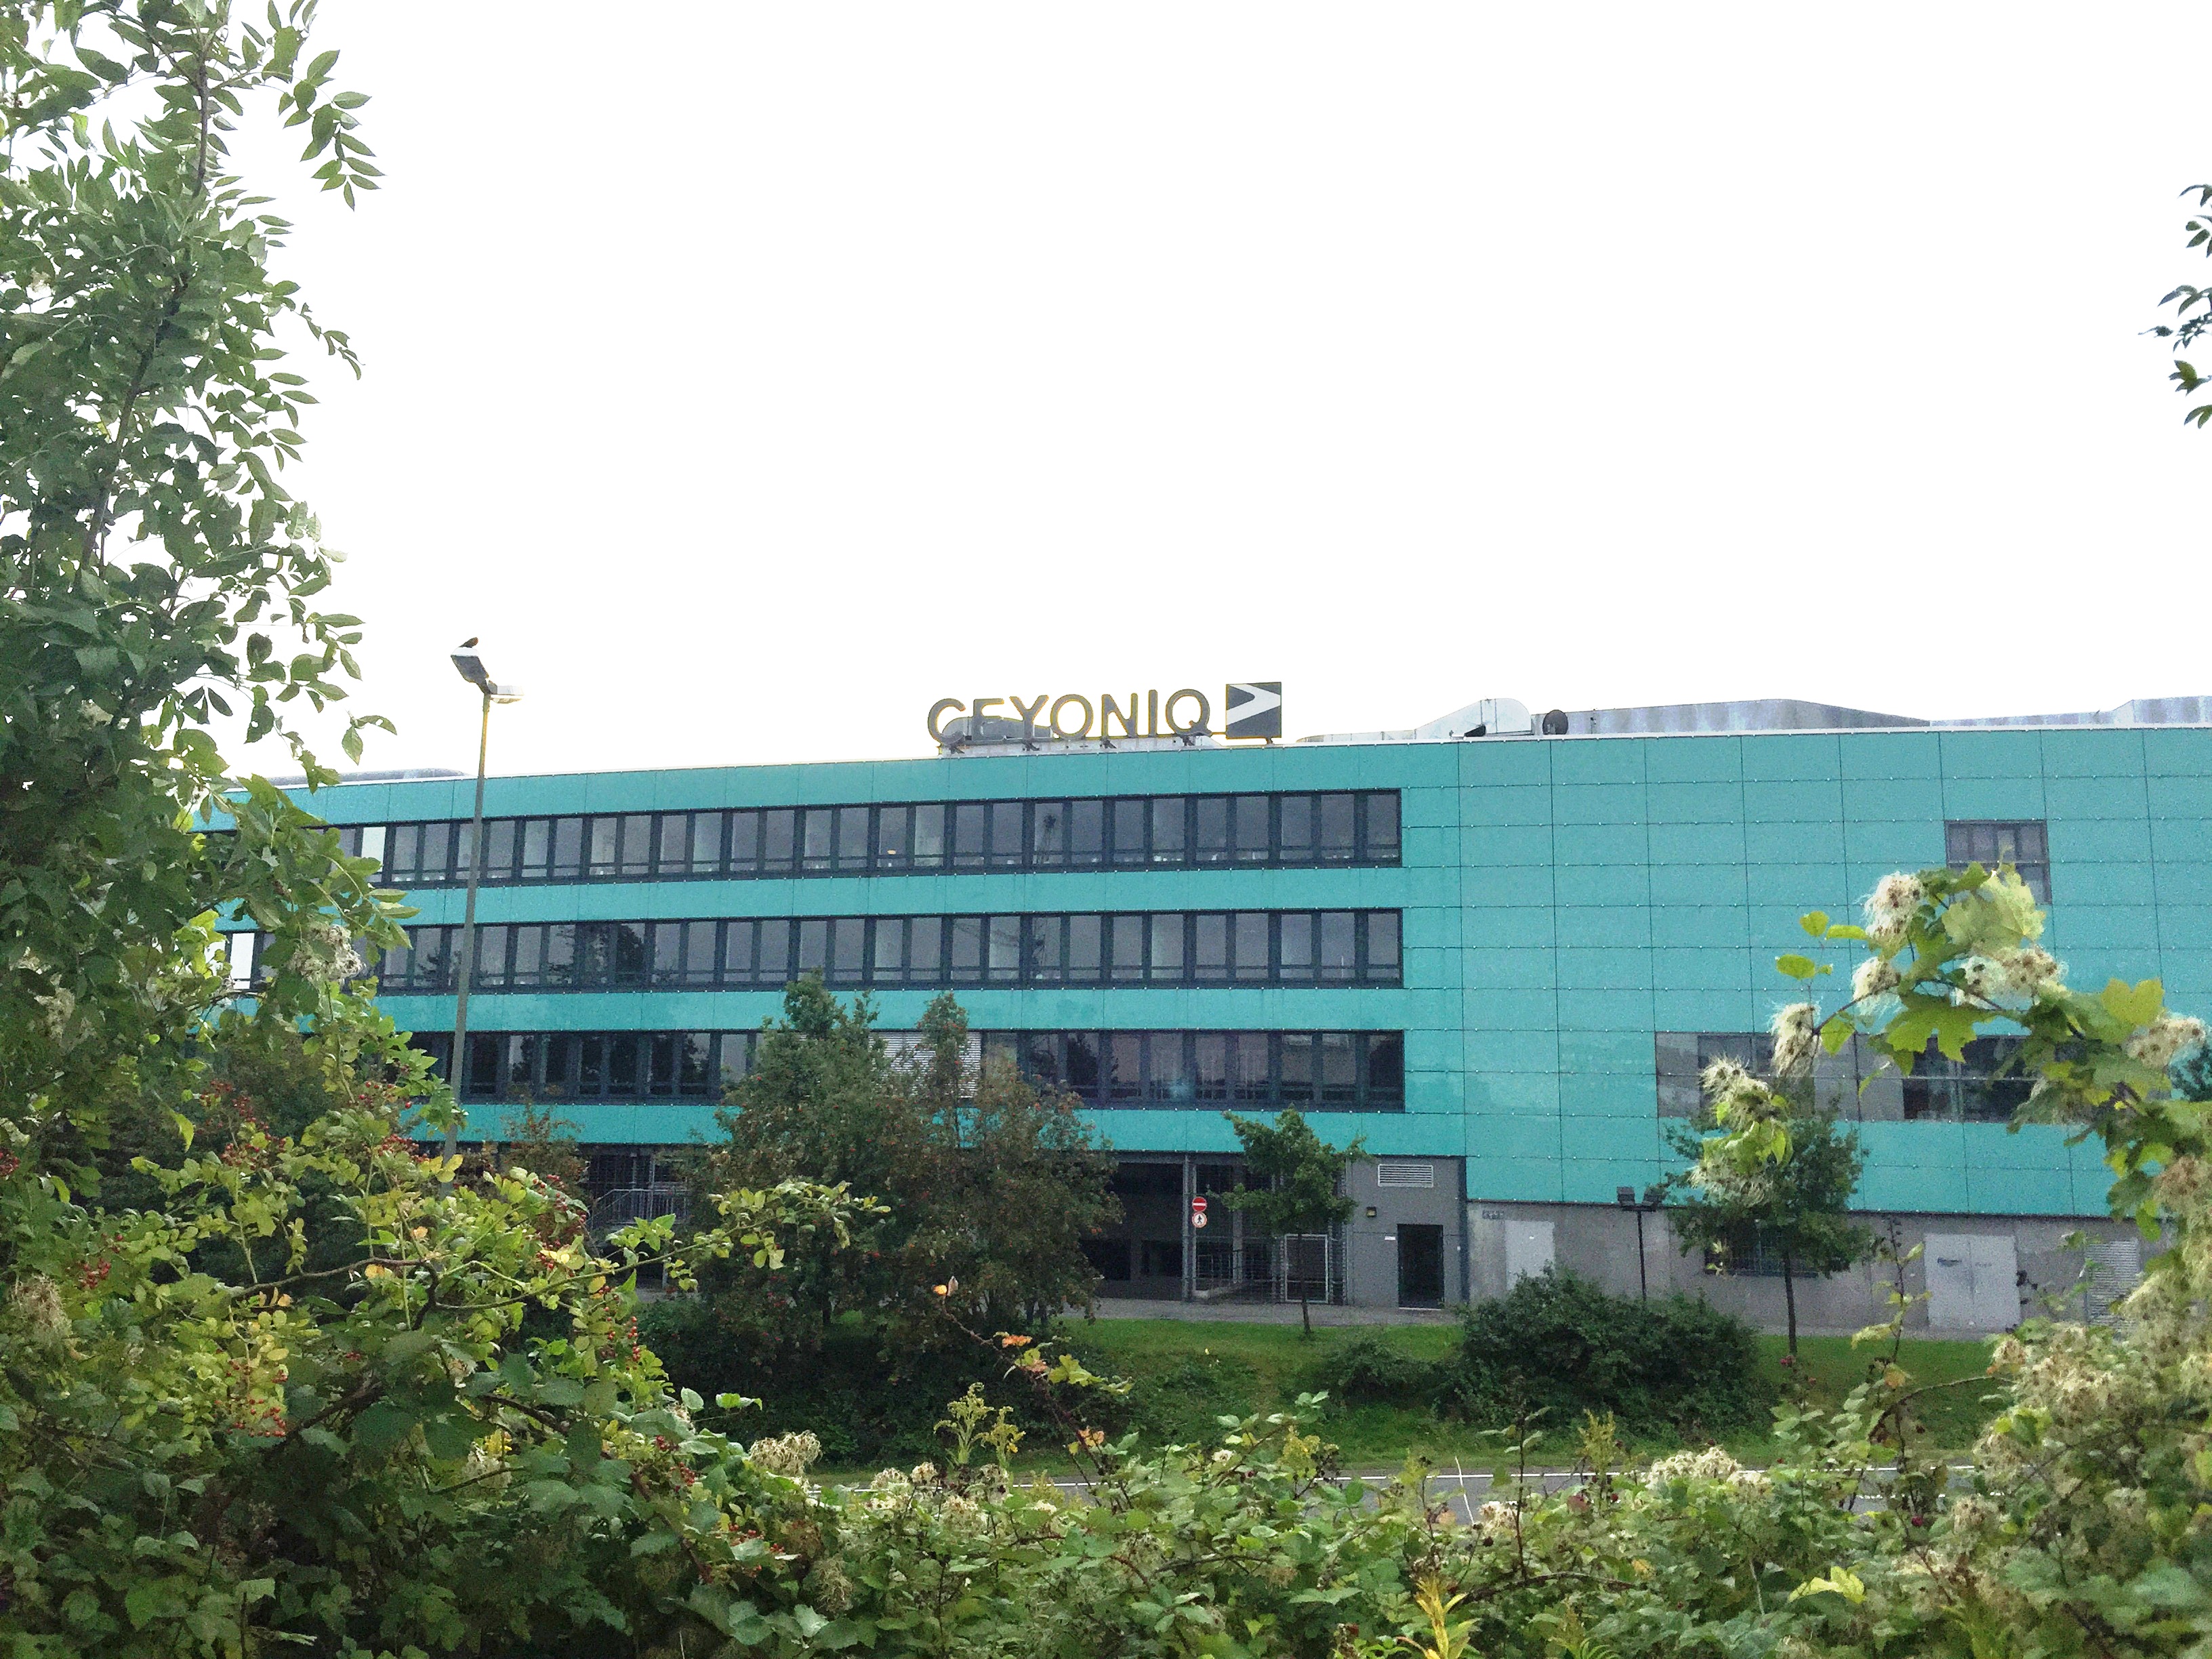 Ceyoniq office in Bielefeld